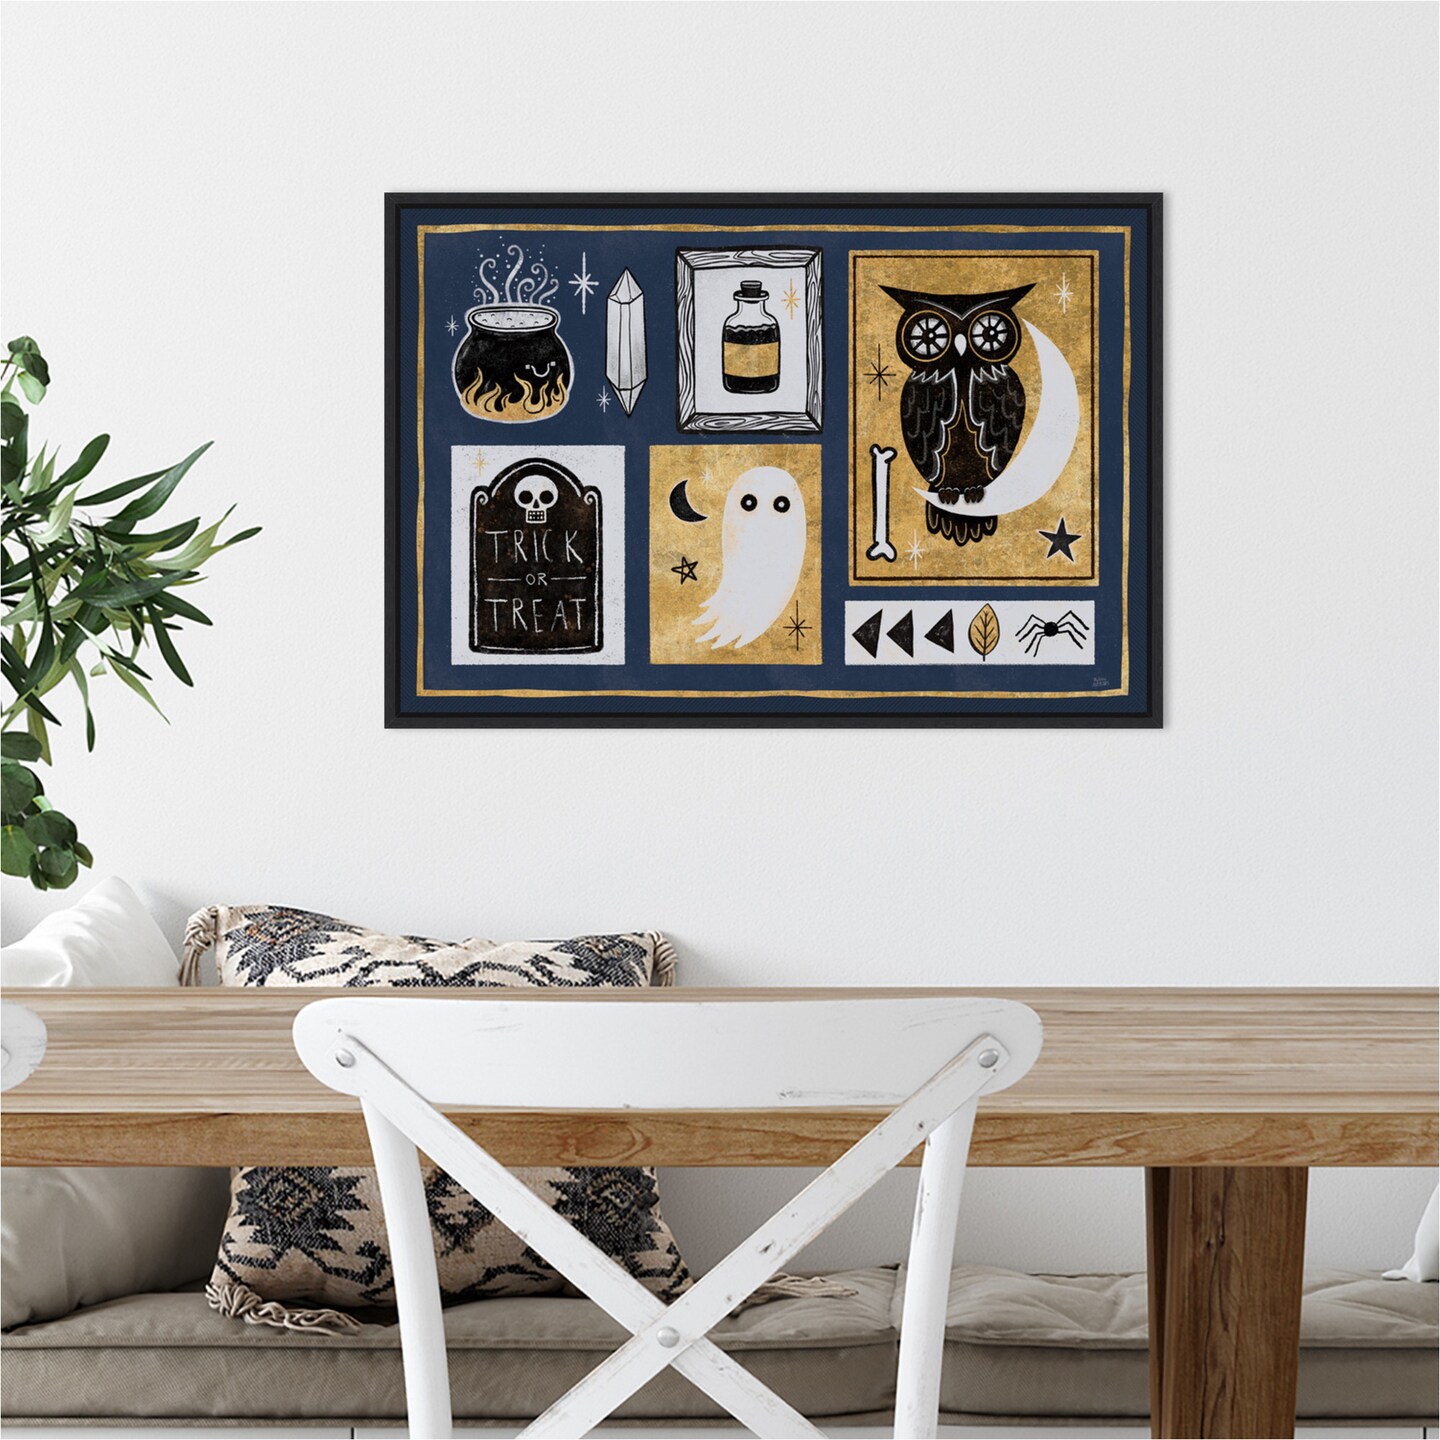 Frightfully Wicked II Owl by Melissa Averinos 23-in. W x 16-in. H. Canvas Wall Art Print Framed in Black